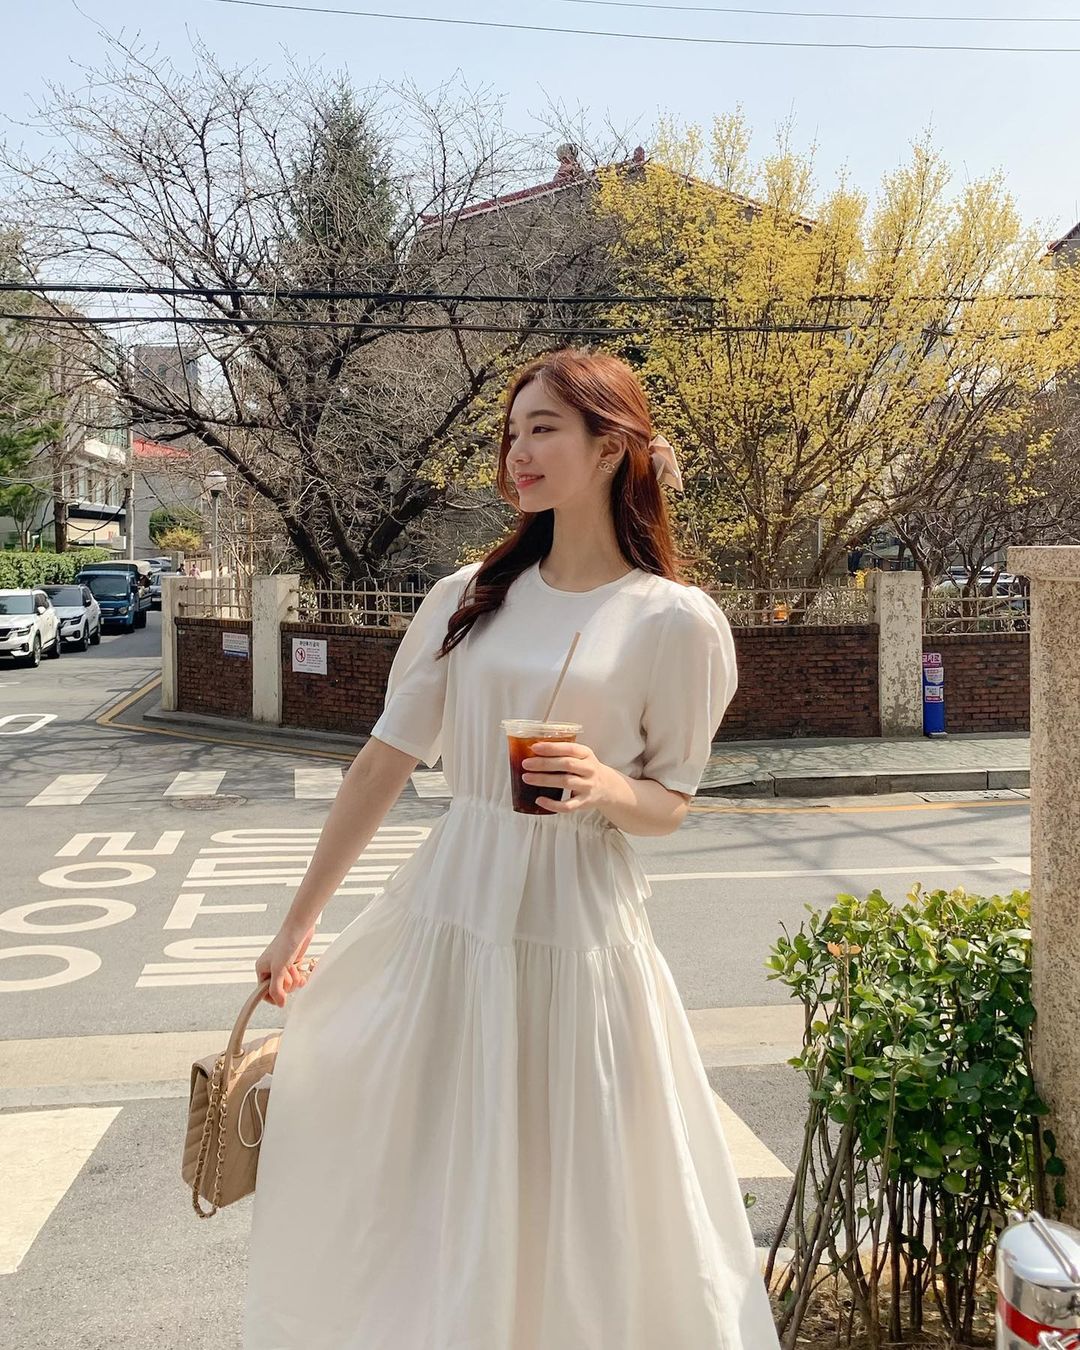 Cách phối đồ với chiếc đầm trắng Hàn Quốc để đẹp và sang trọng?
